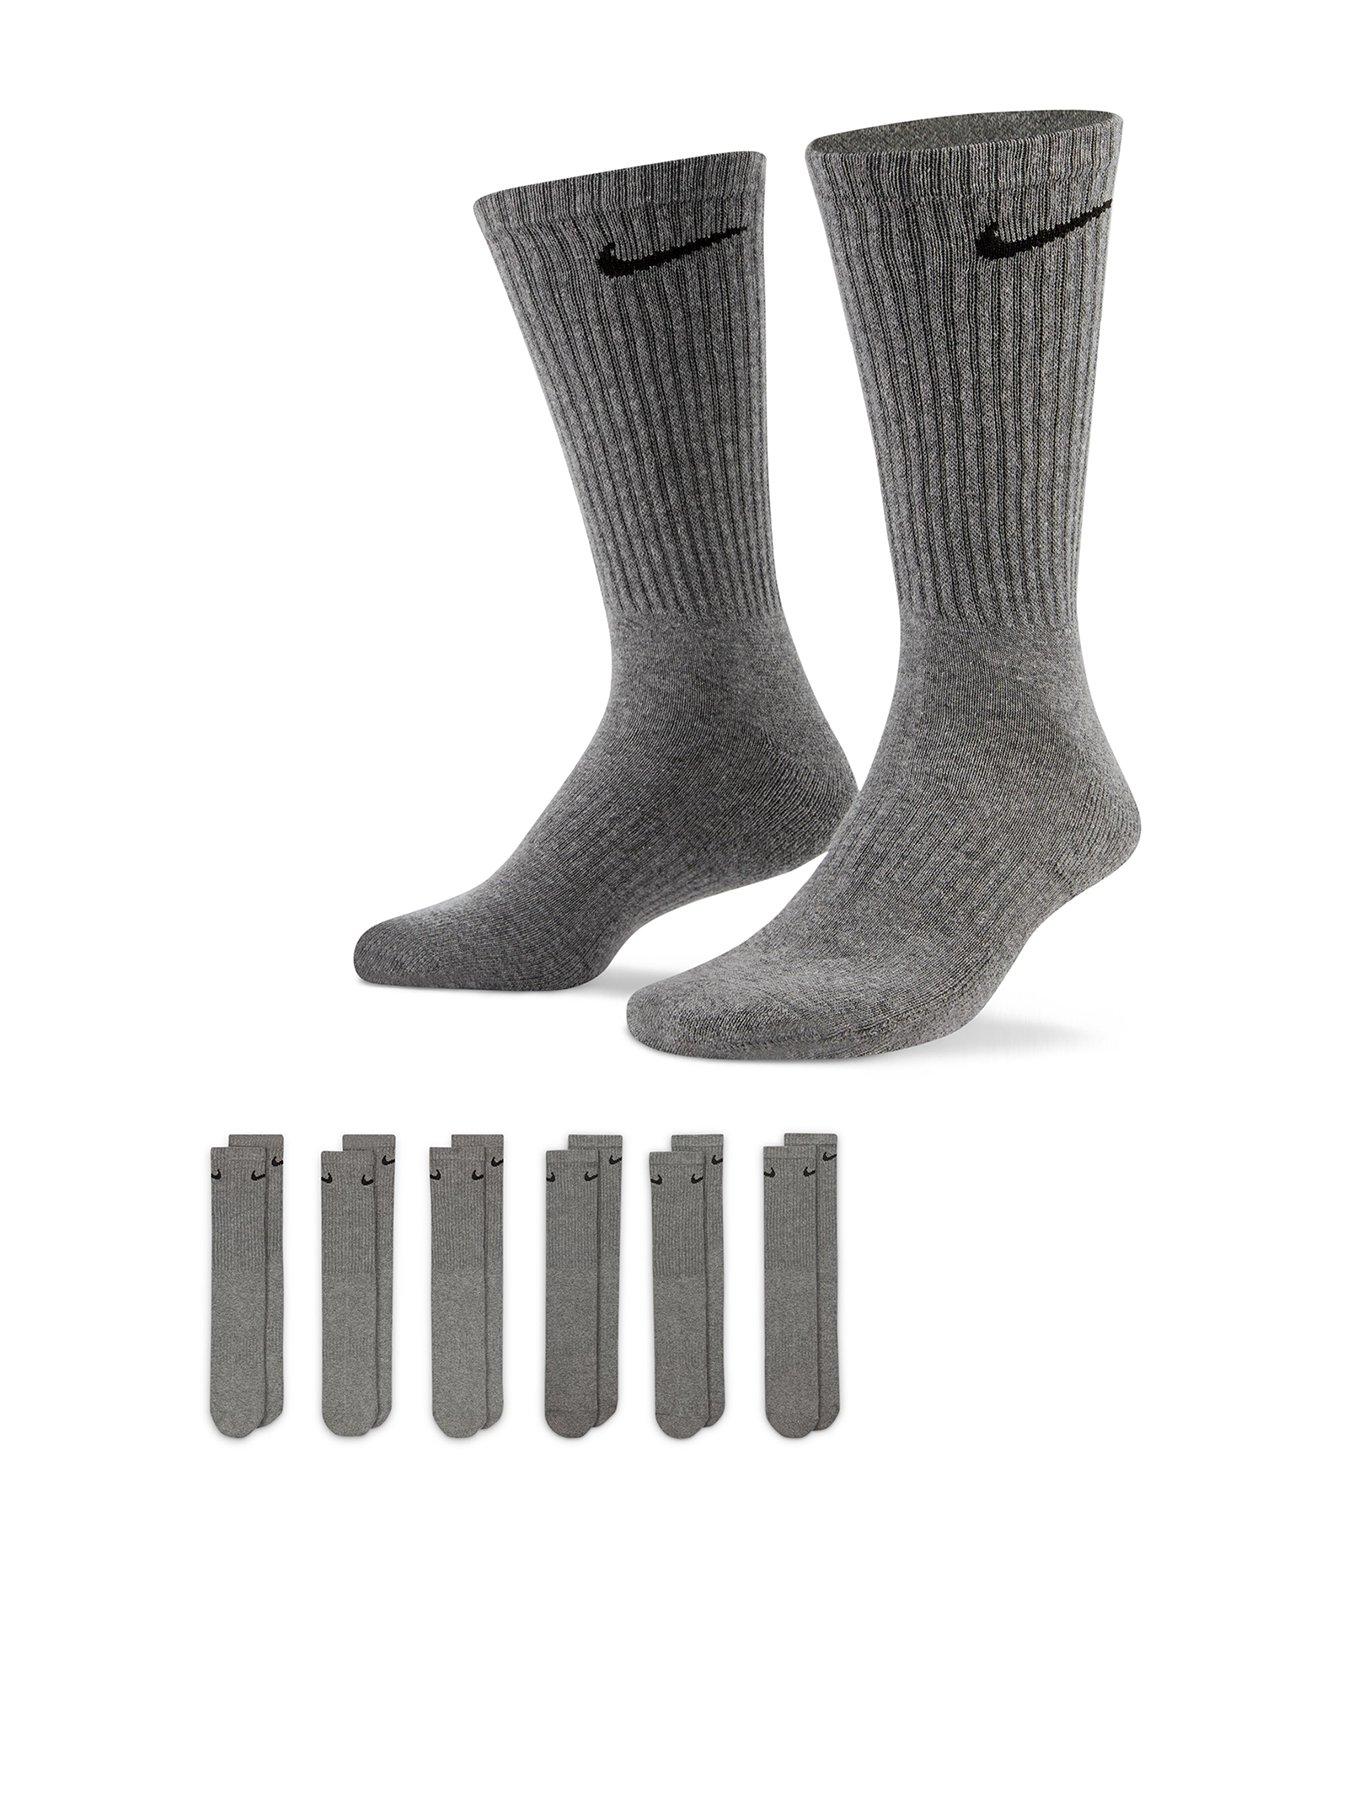 Socks Men | Black & White Socks | Very.co.uk